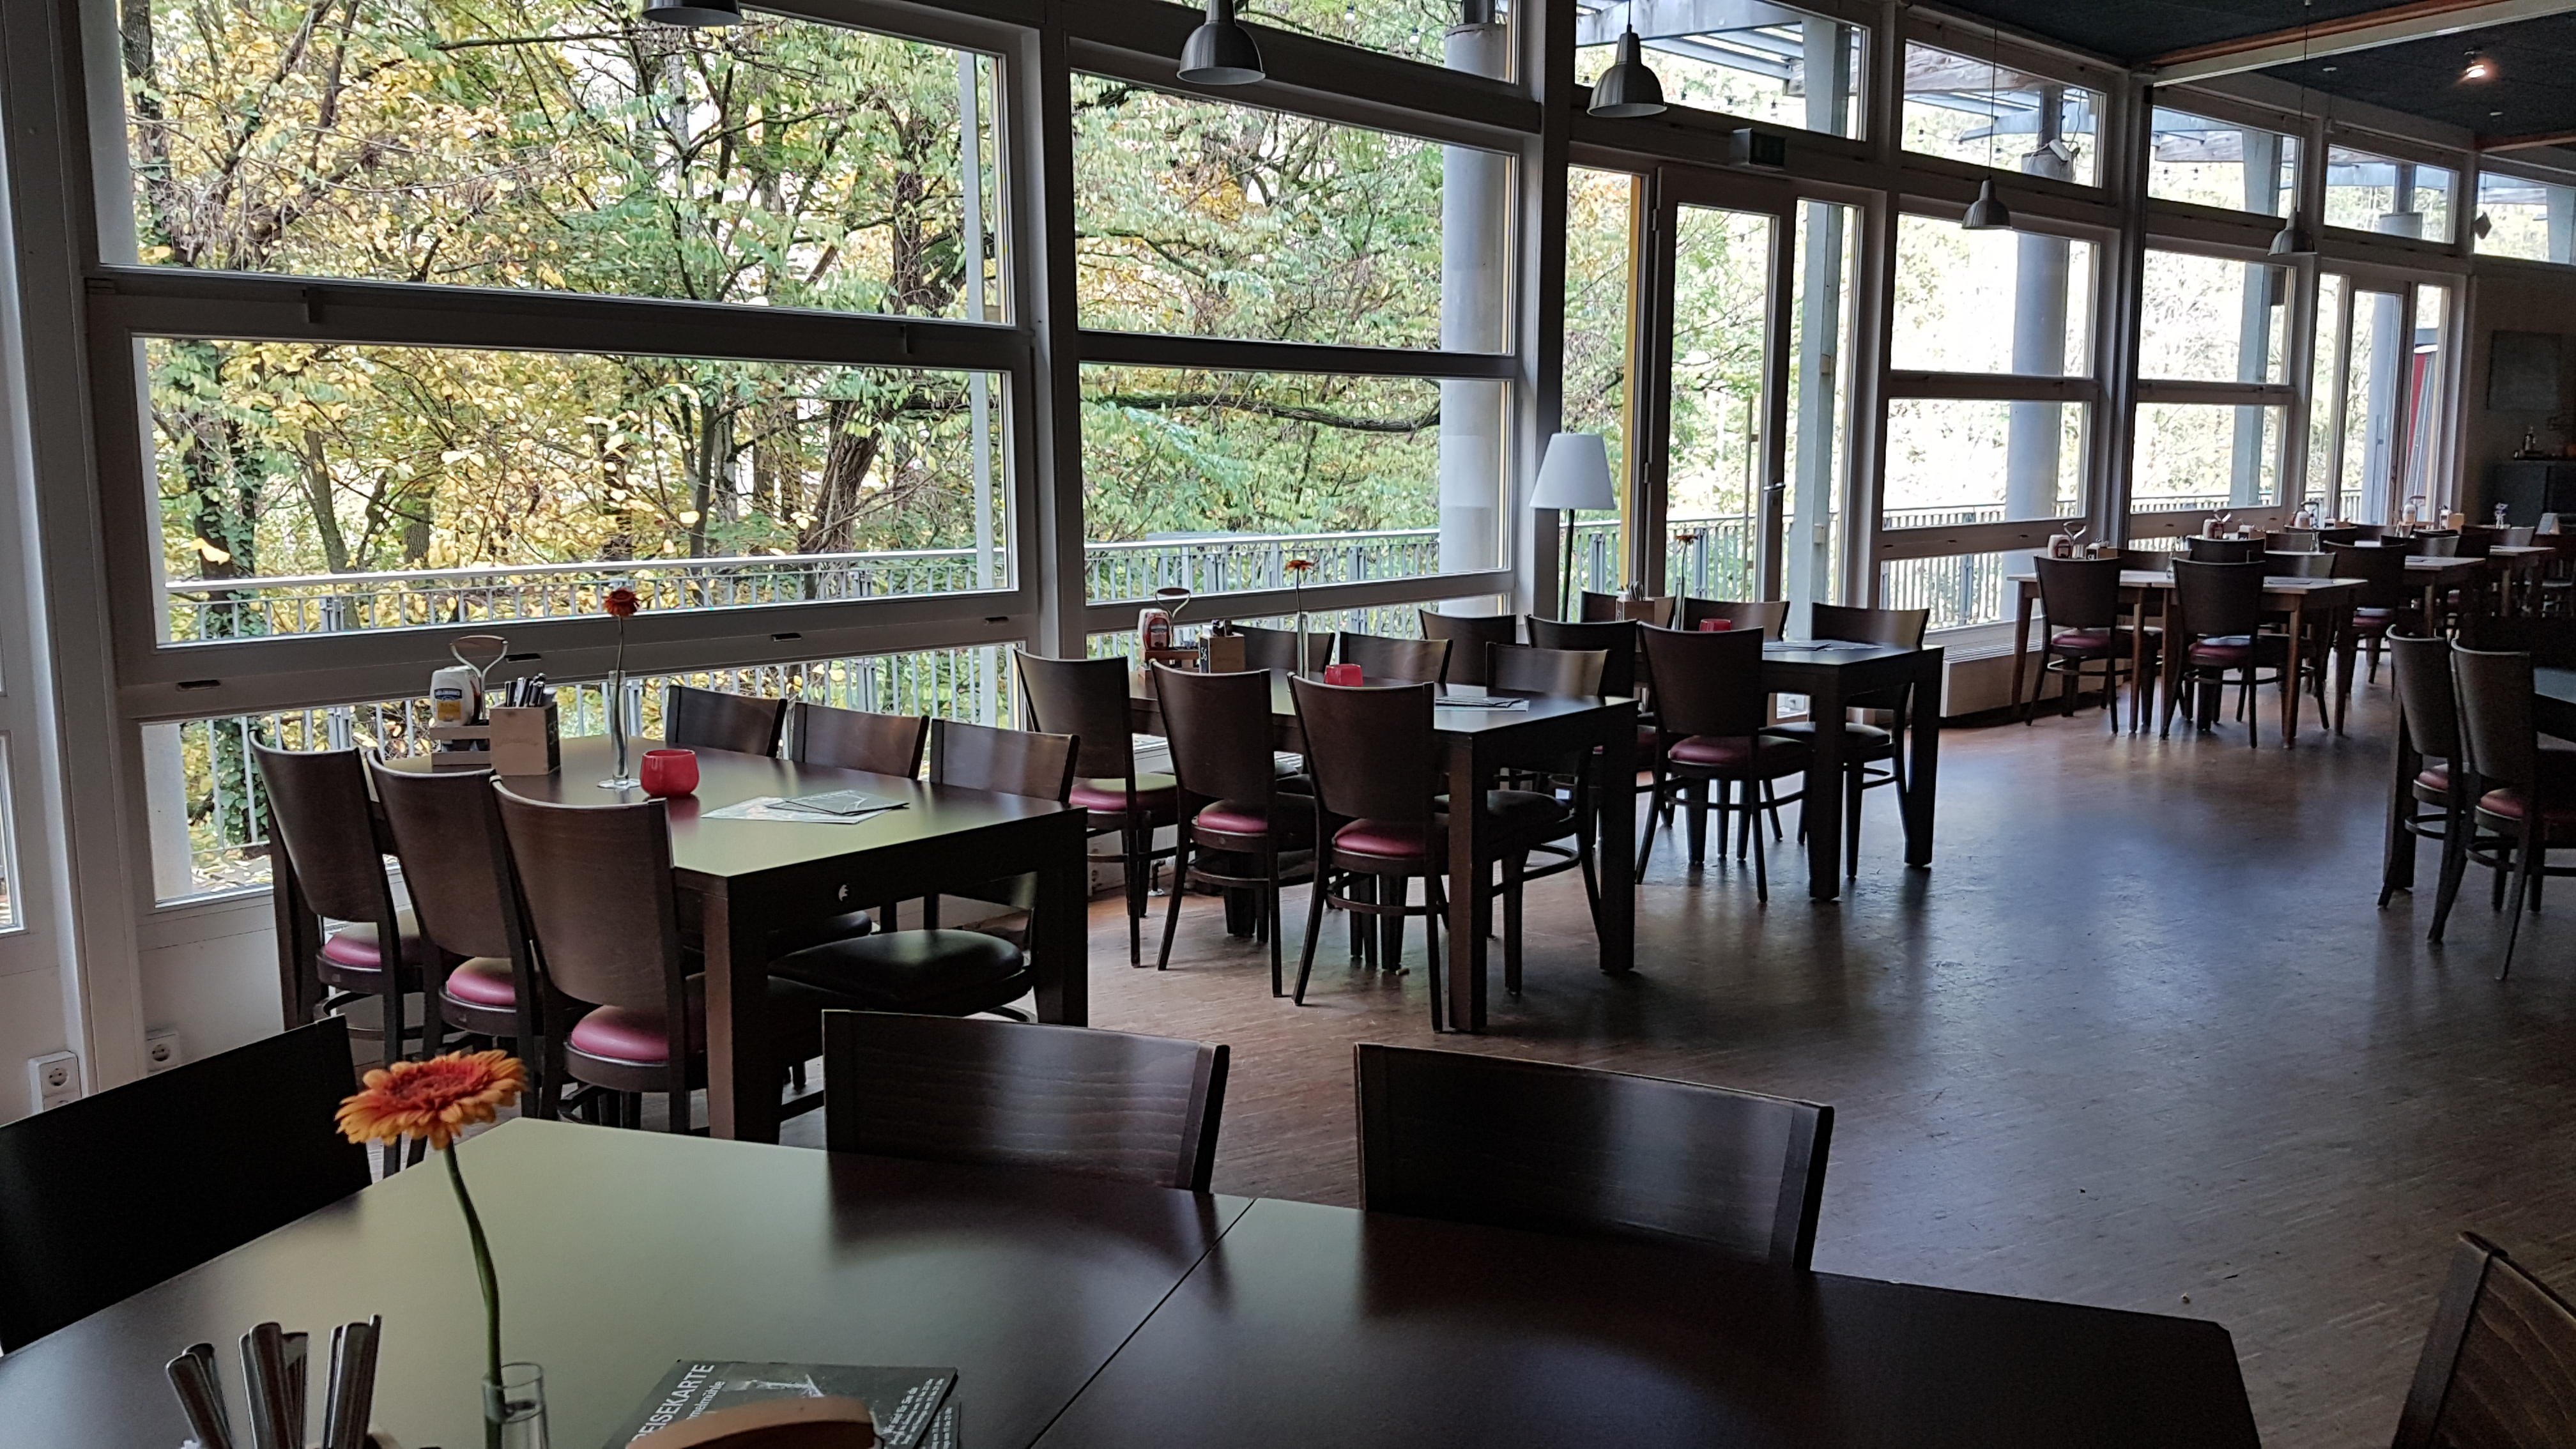 Bild 2 Restaurant in der Rommelmühle in Bietigheim-Bissingen